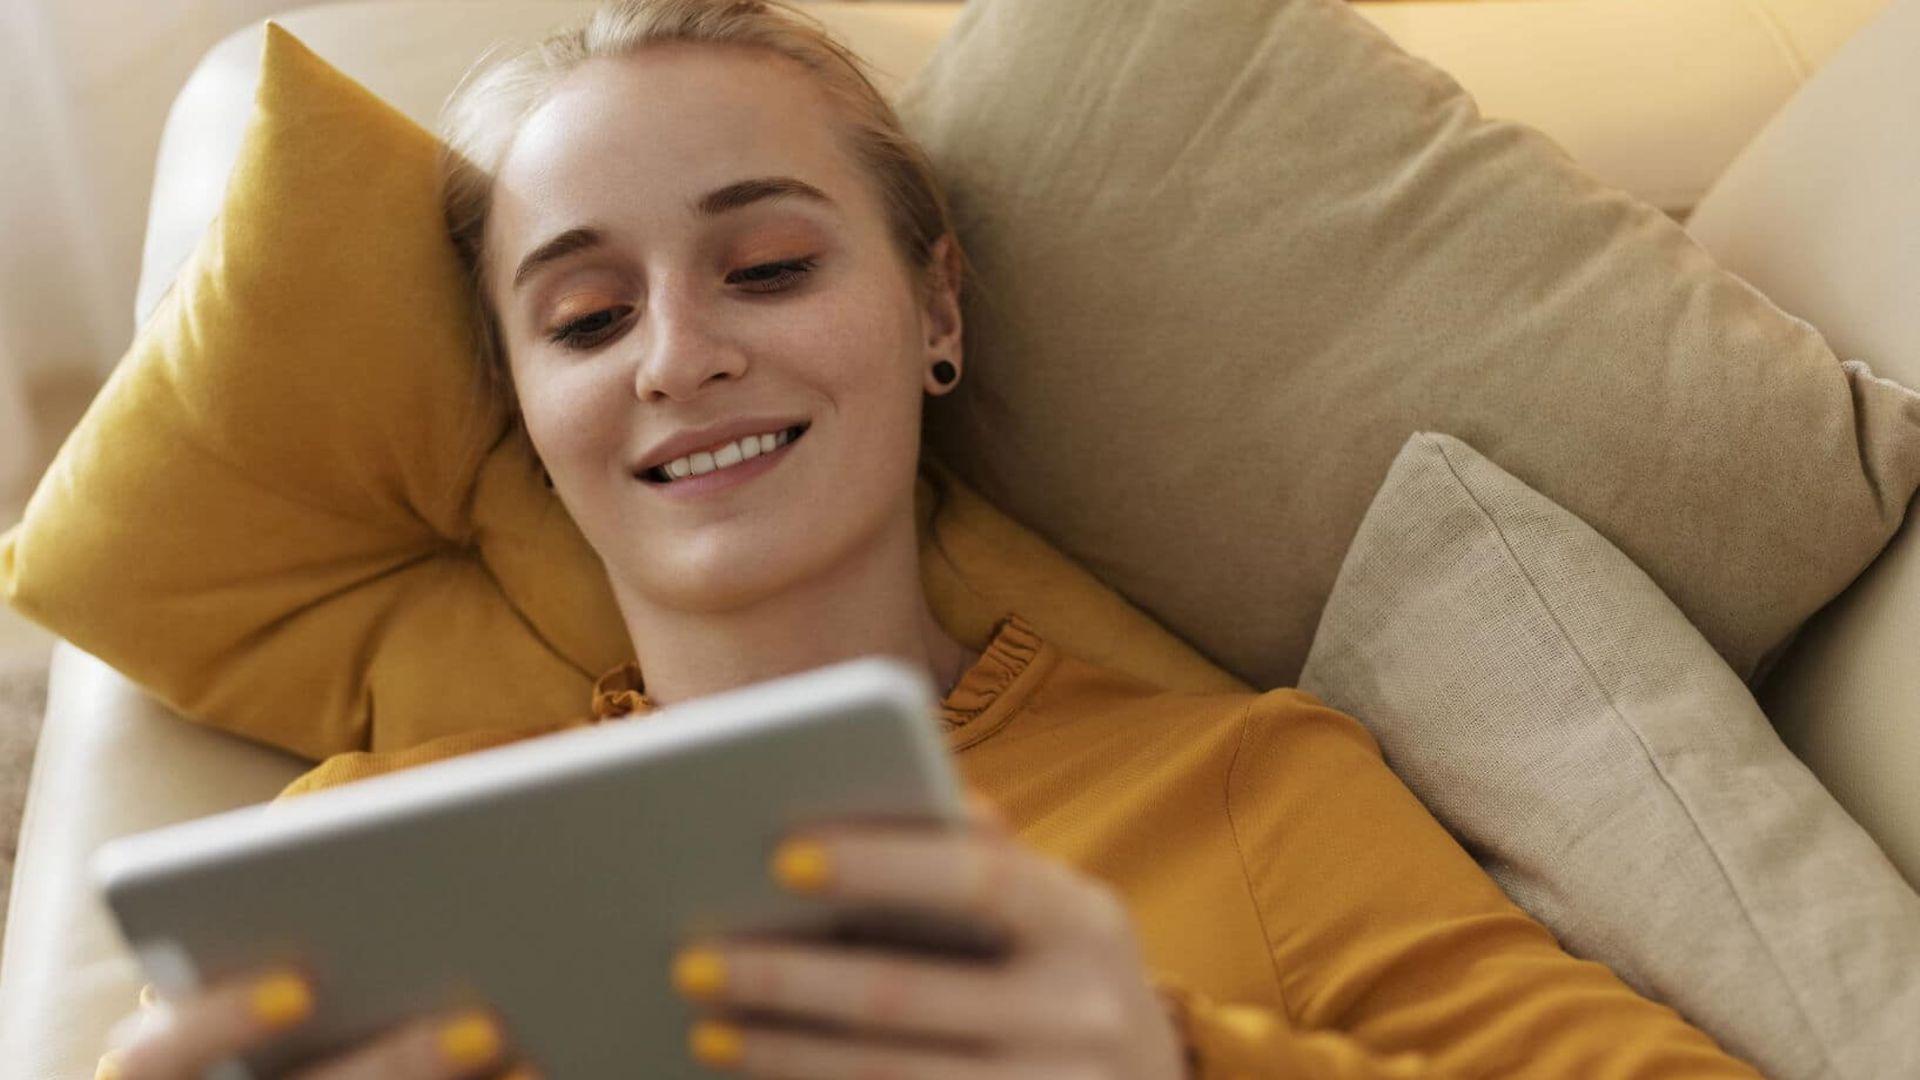 Symbolfoto elektronische Patientenakte: Frau liegt auf Sofa und schaut lächelnd auf Tablet.